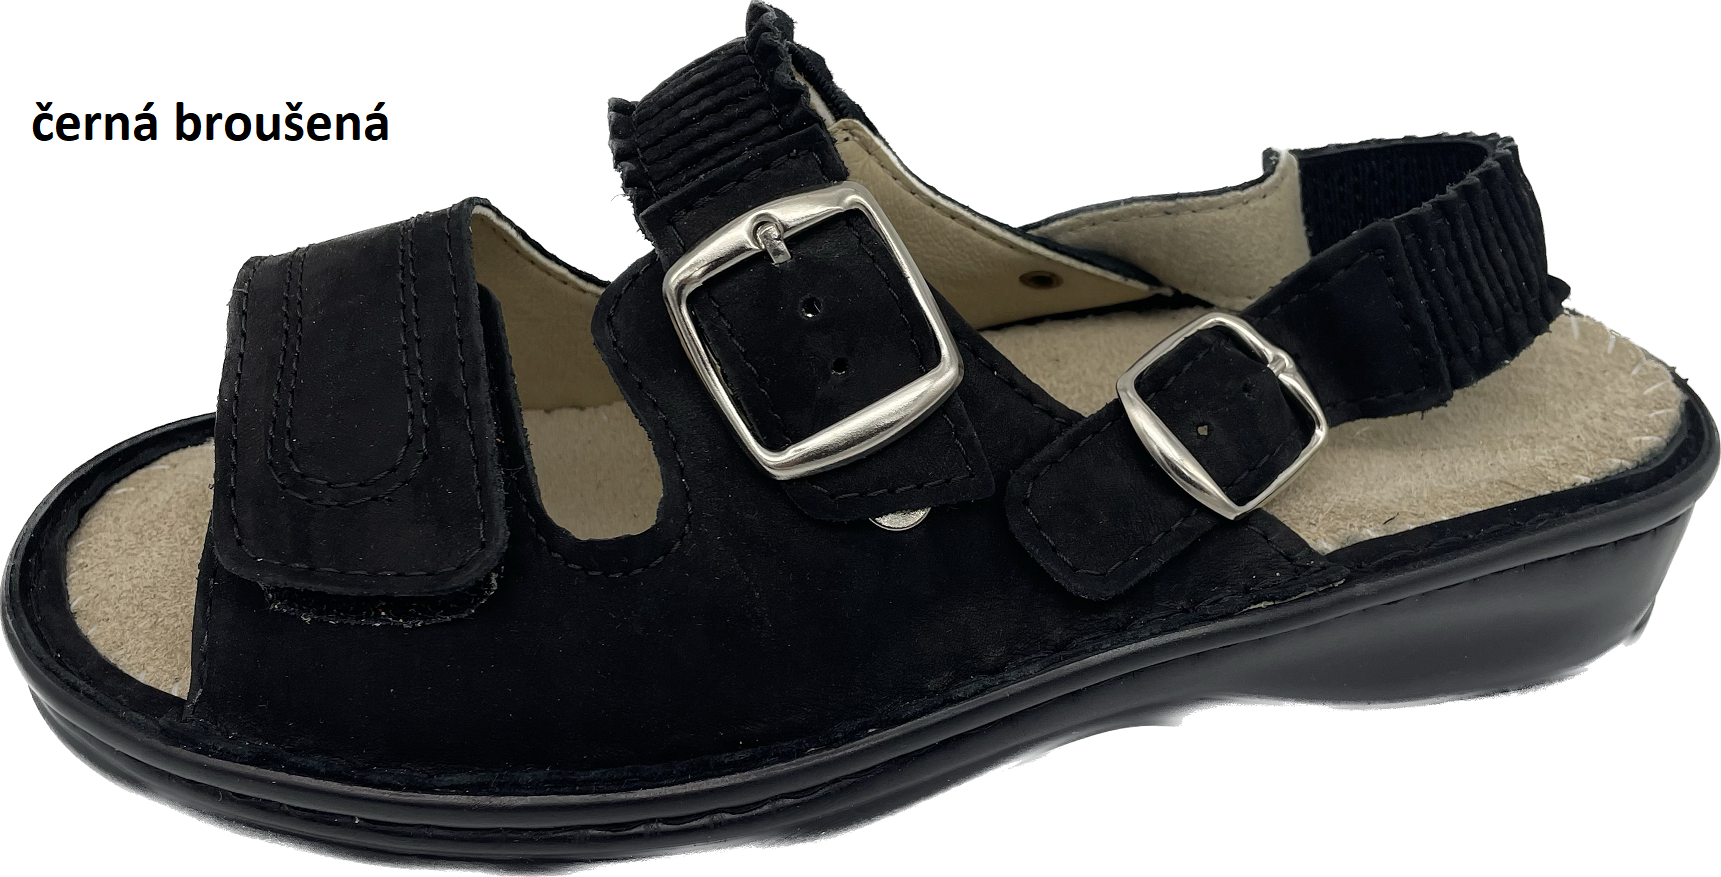 Boty Hanák vzor 305 P - černá podešev Barva usně: černá broušená, Velikosti obuvi: 37